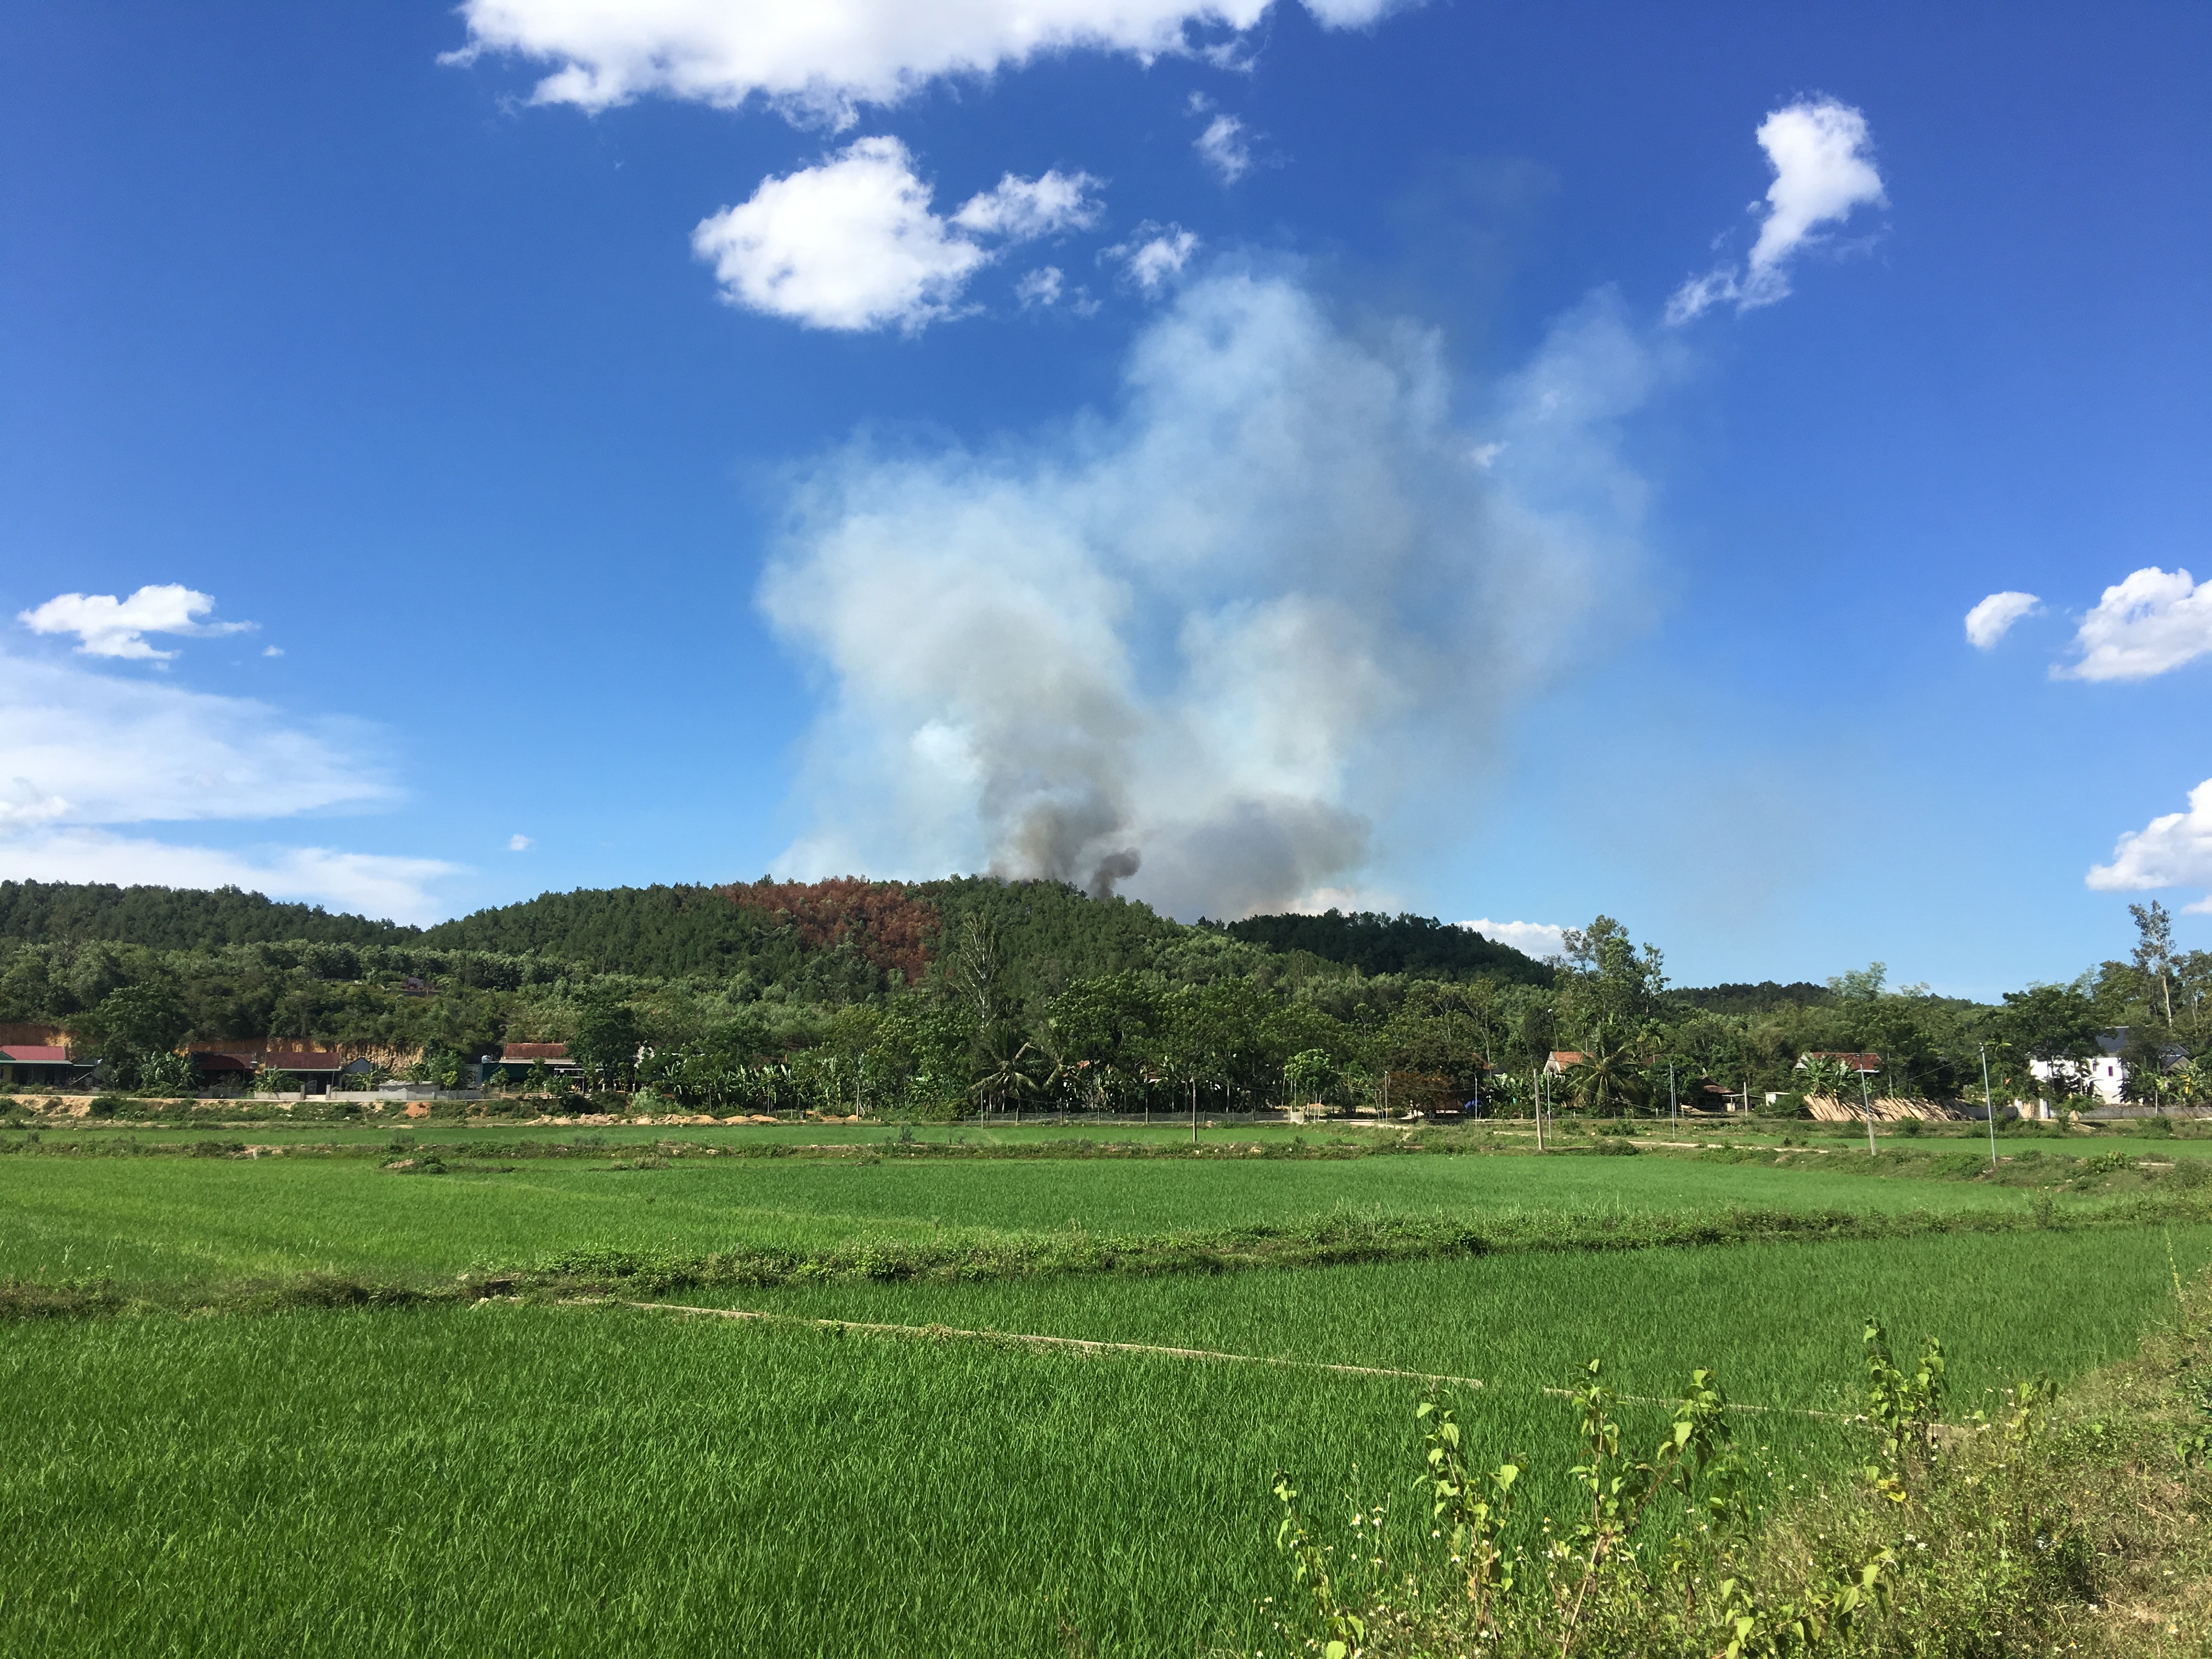 Đám cháy bắt đầu xuất hiện tại khu vực rừng thông thuộc xóm 1. Ảnh: Ngọc Minh